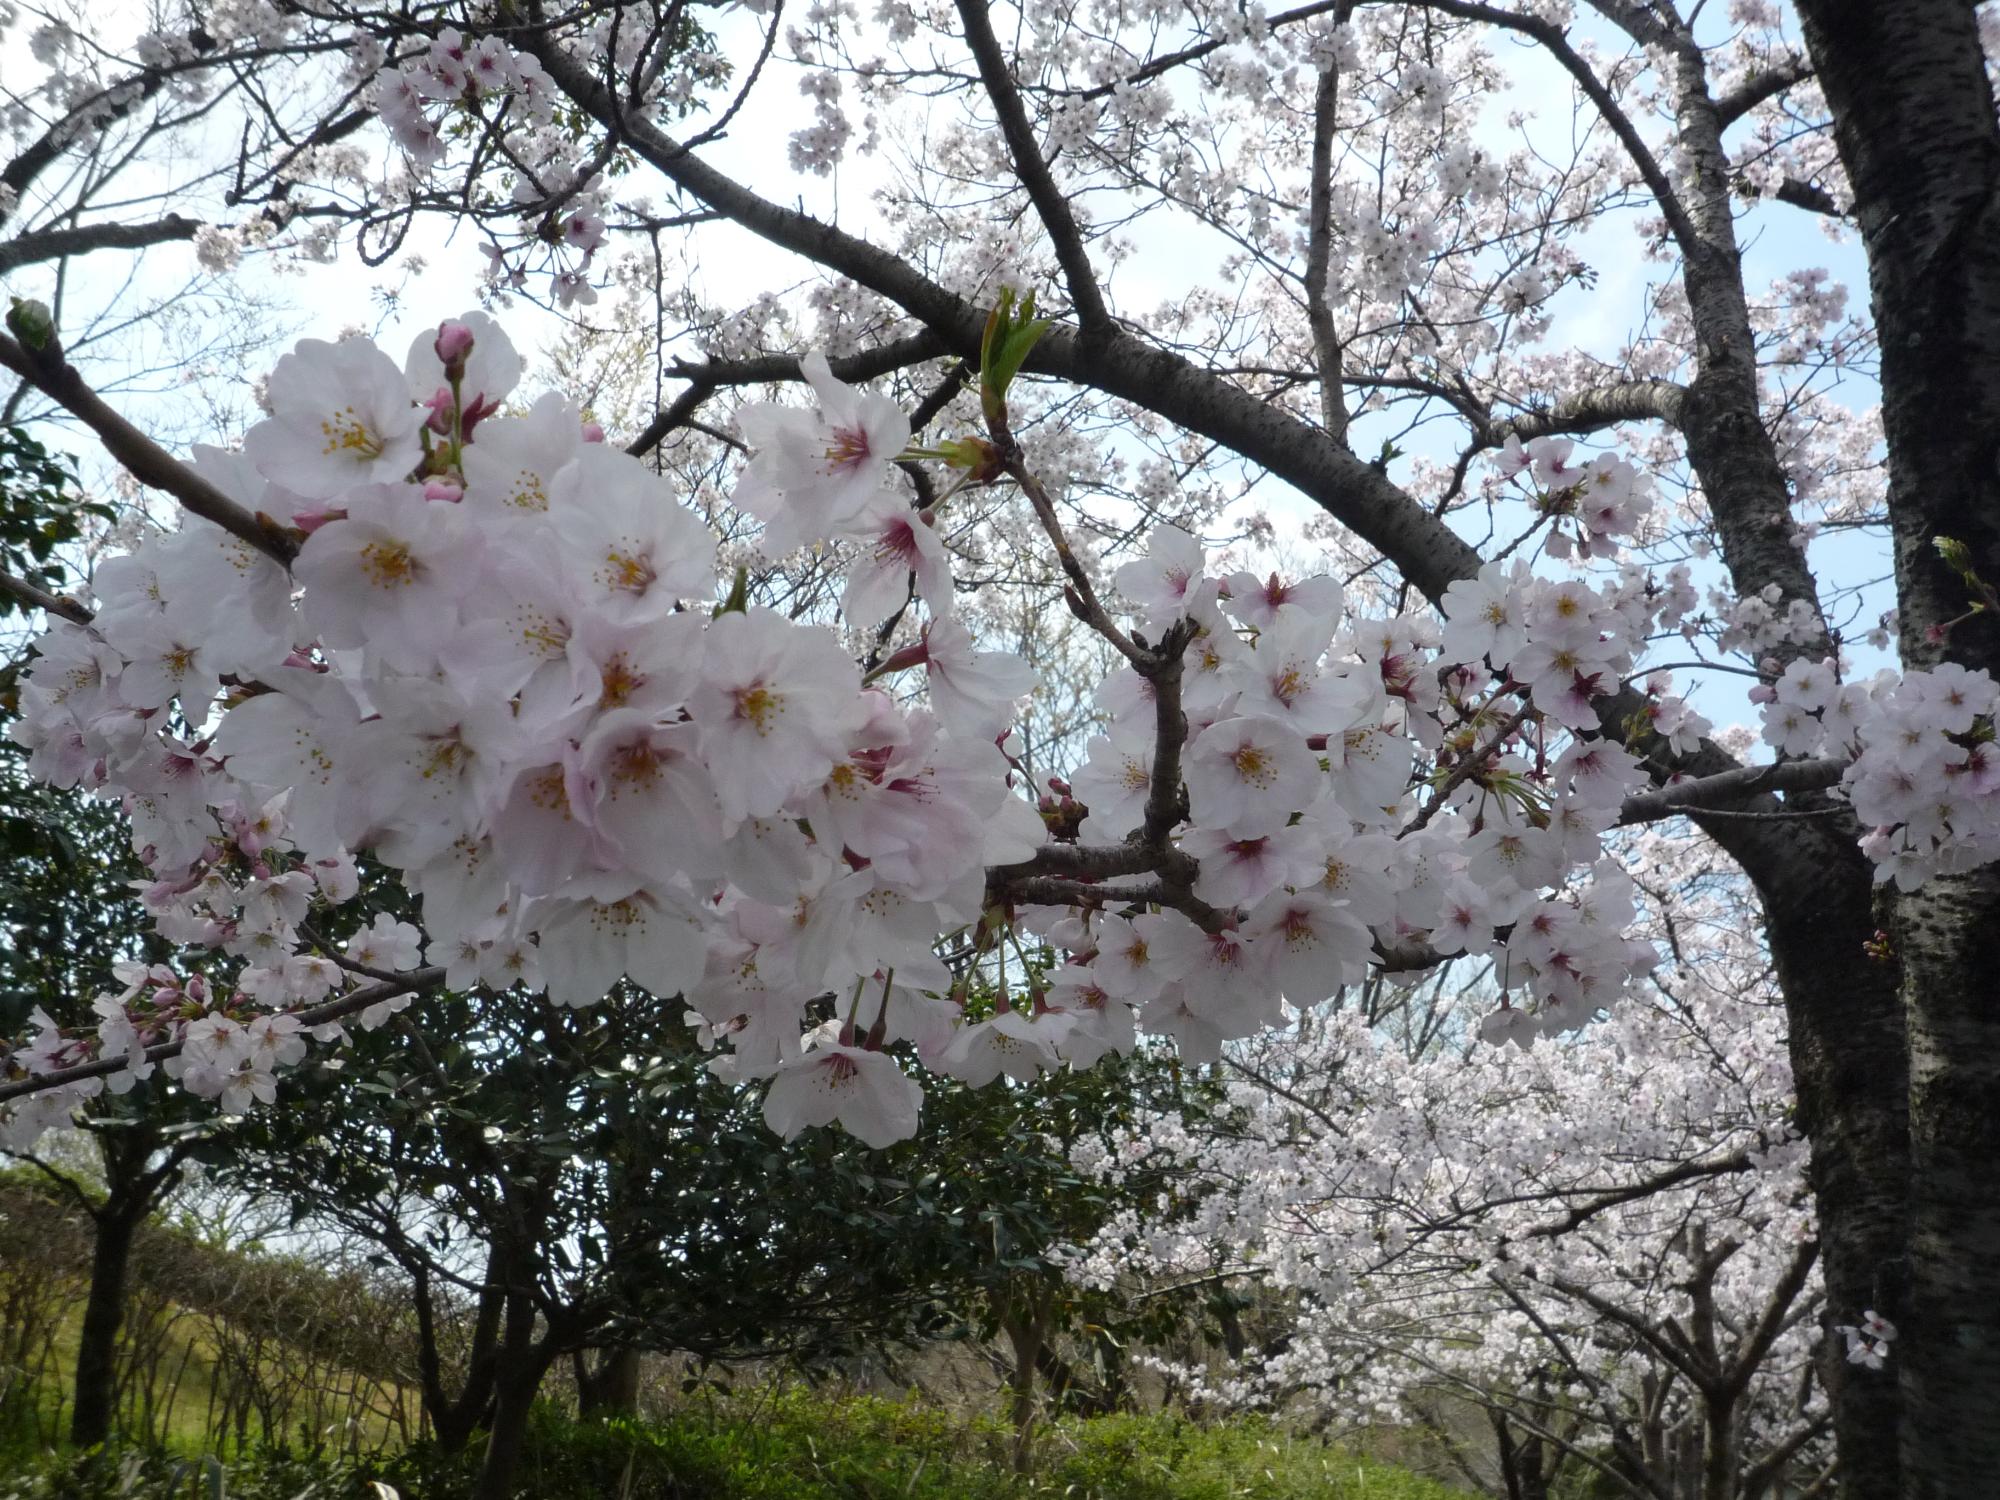 桜の代表種といわれているソメイヨシノ。新型コロナウイルスの各線拡大防止から公園内の施設利用も制限を受けていますが、きれいに咲いた桜の花を見ると気持ちが明るくなりますね。